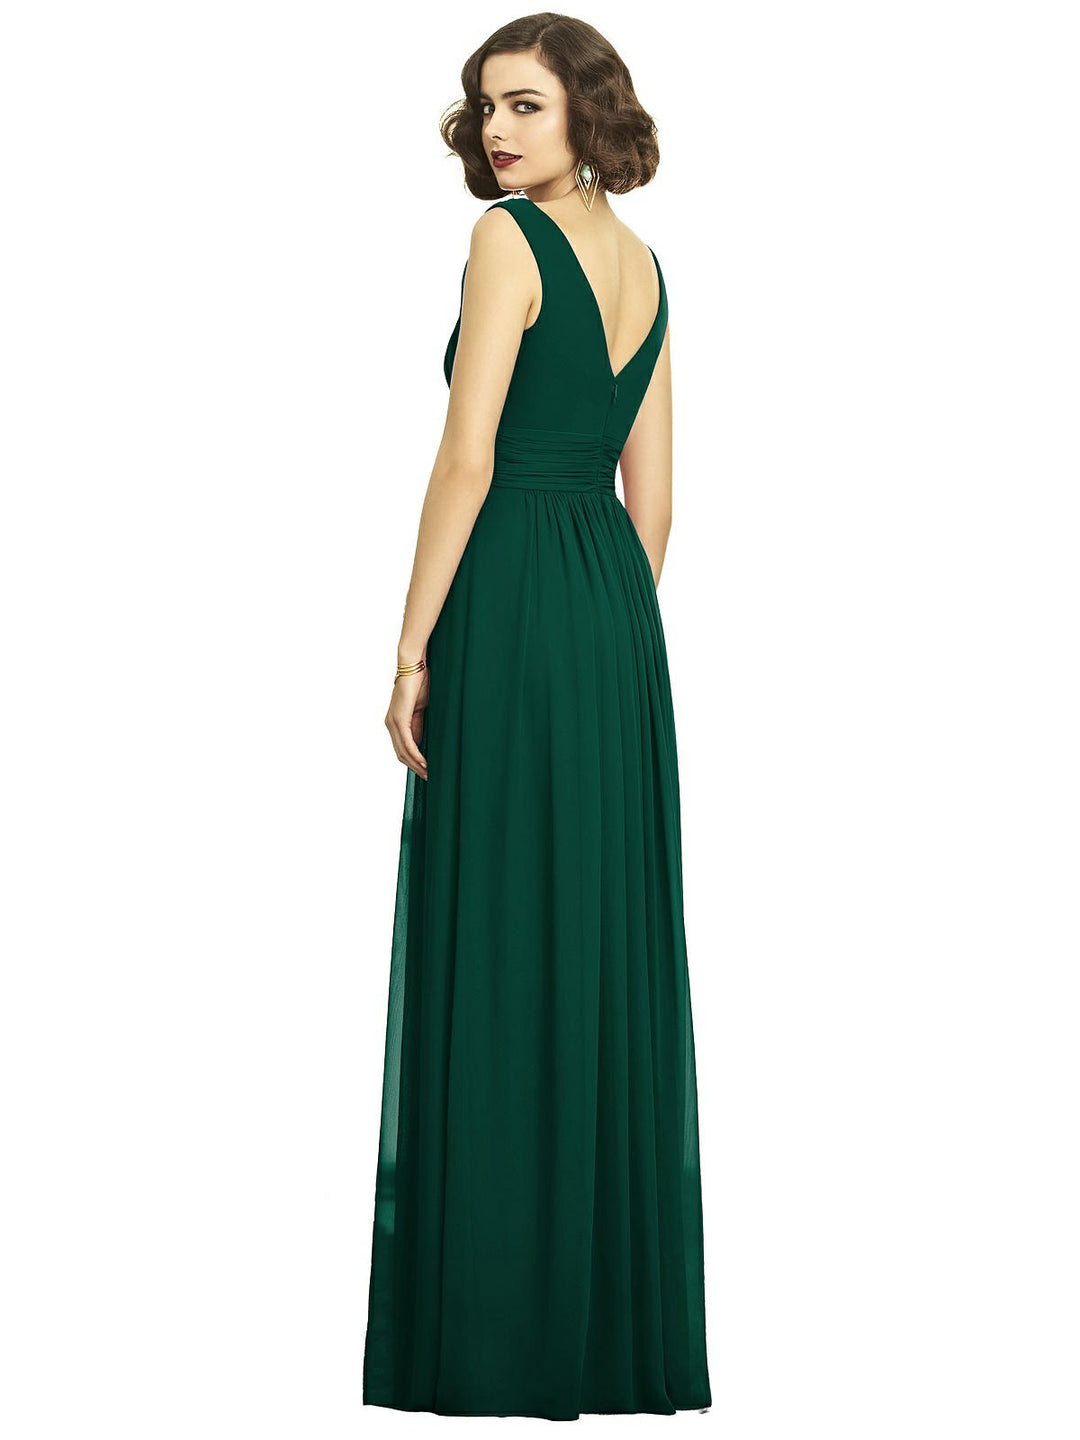 Sleeveless Draped Chiffon Maxi Dress with Front Slit Style 2894 Size 24